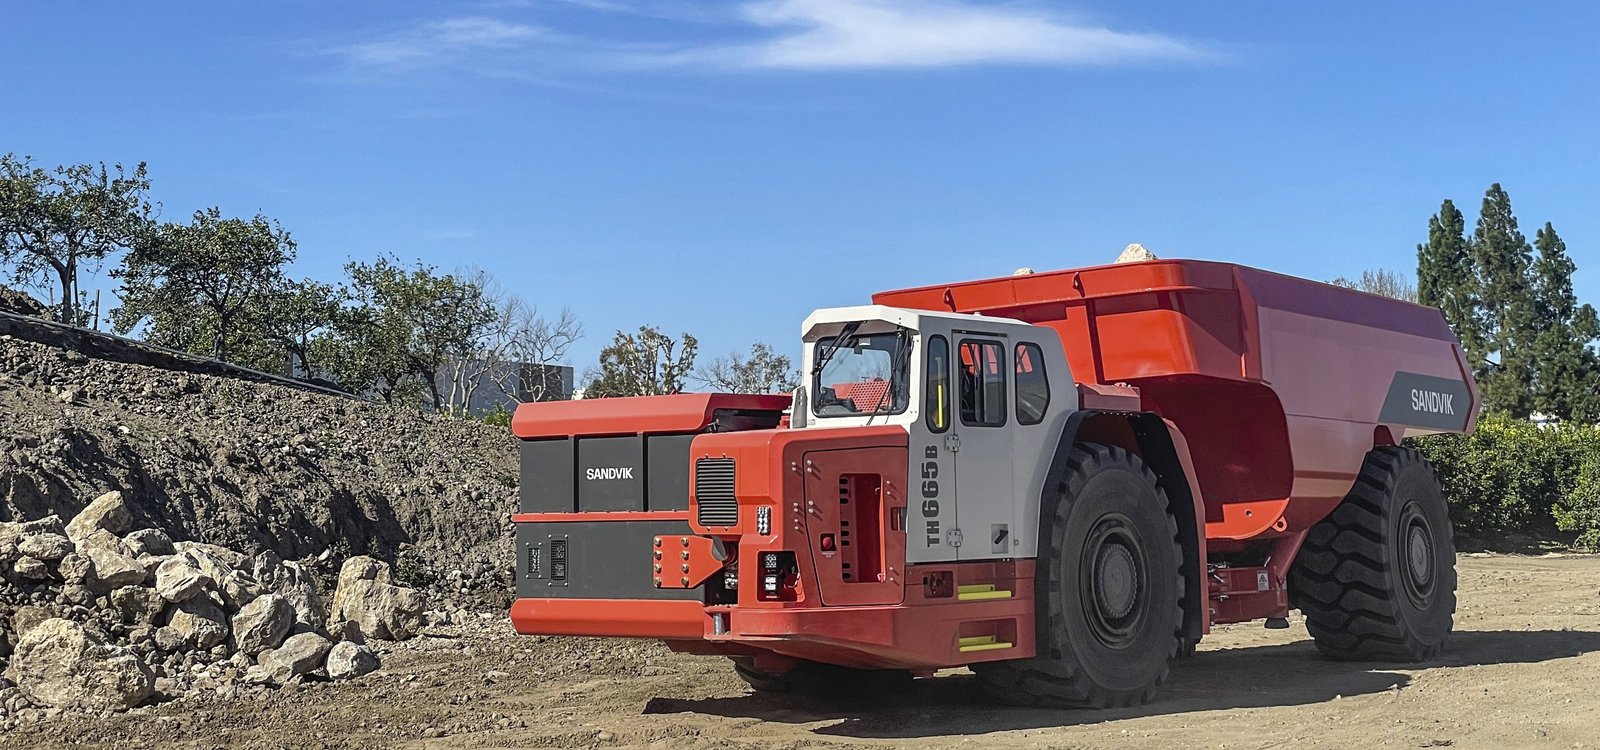 <p>A Sandvik lançou seu caminhão elétrico a bateria de maior capacidade para mineração subterrânea, o TH665B.</p>
